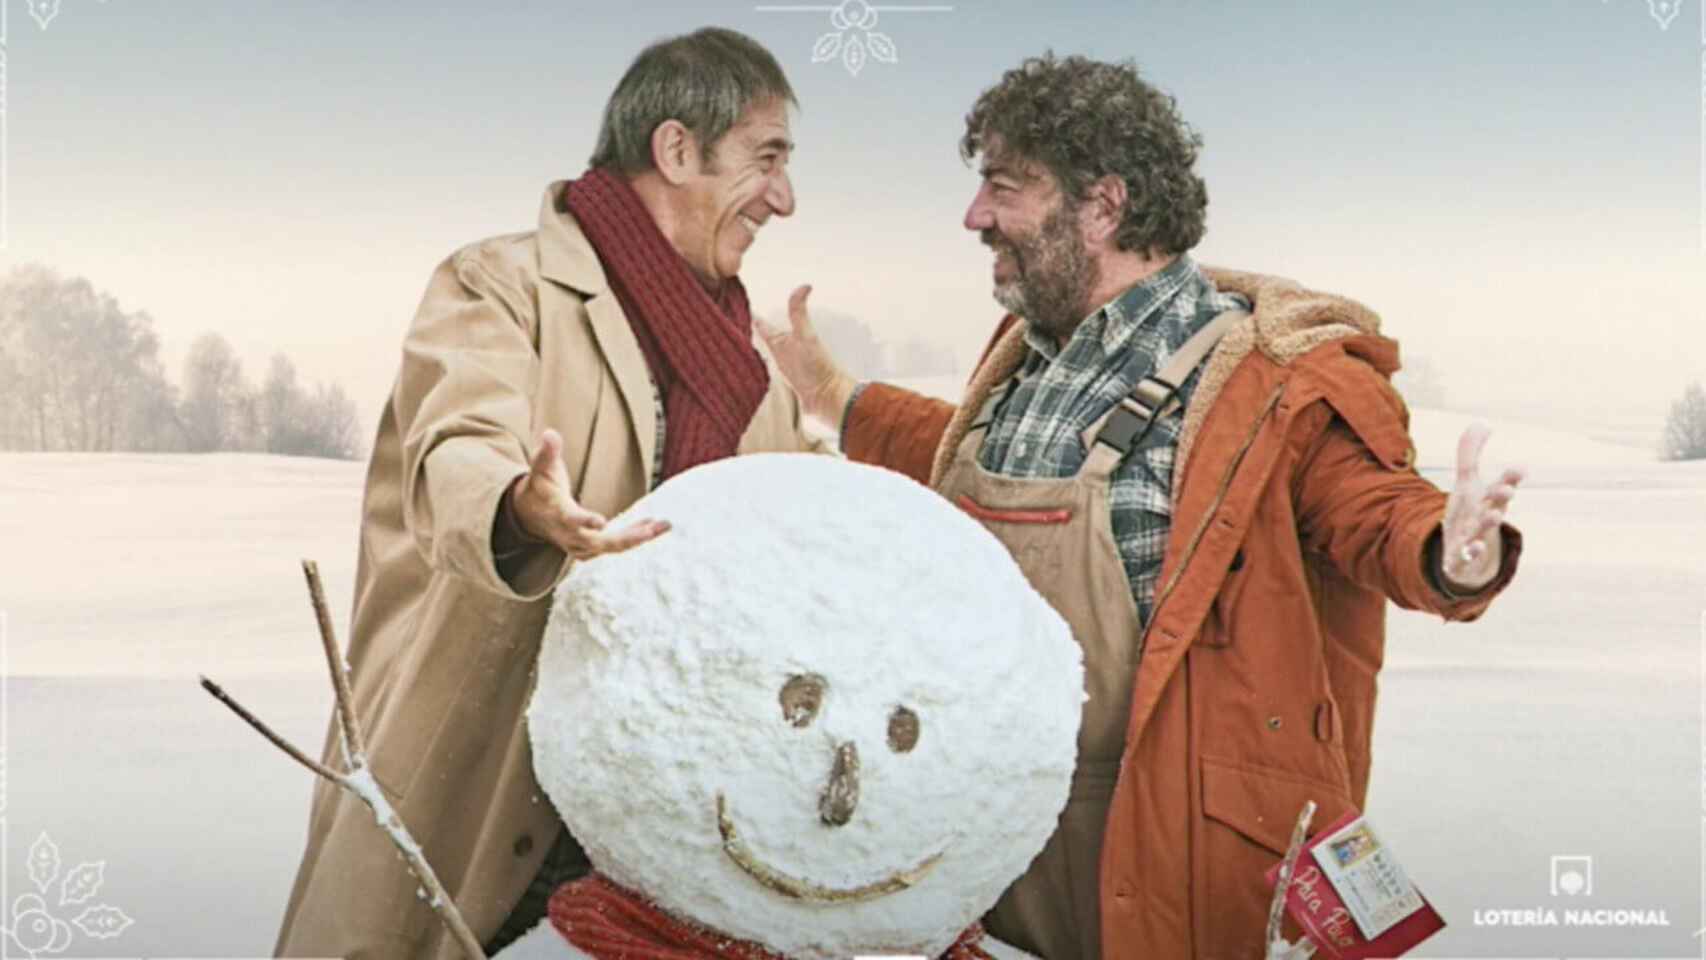 Fotograma del anuncio de la lotería de Navidad de este año.